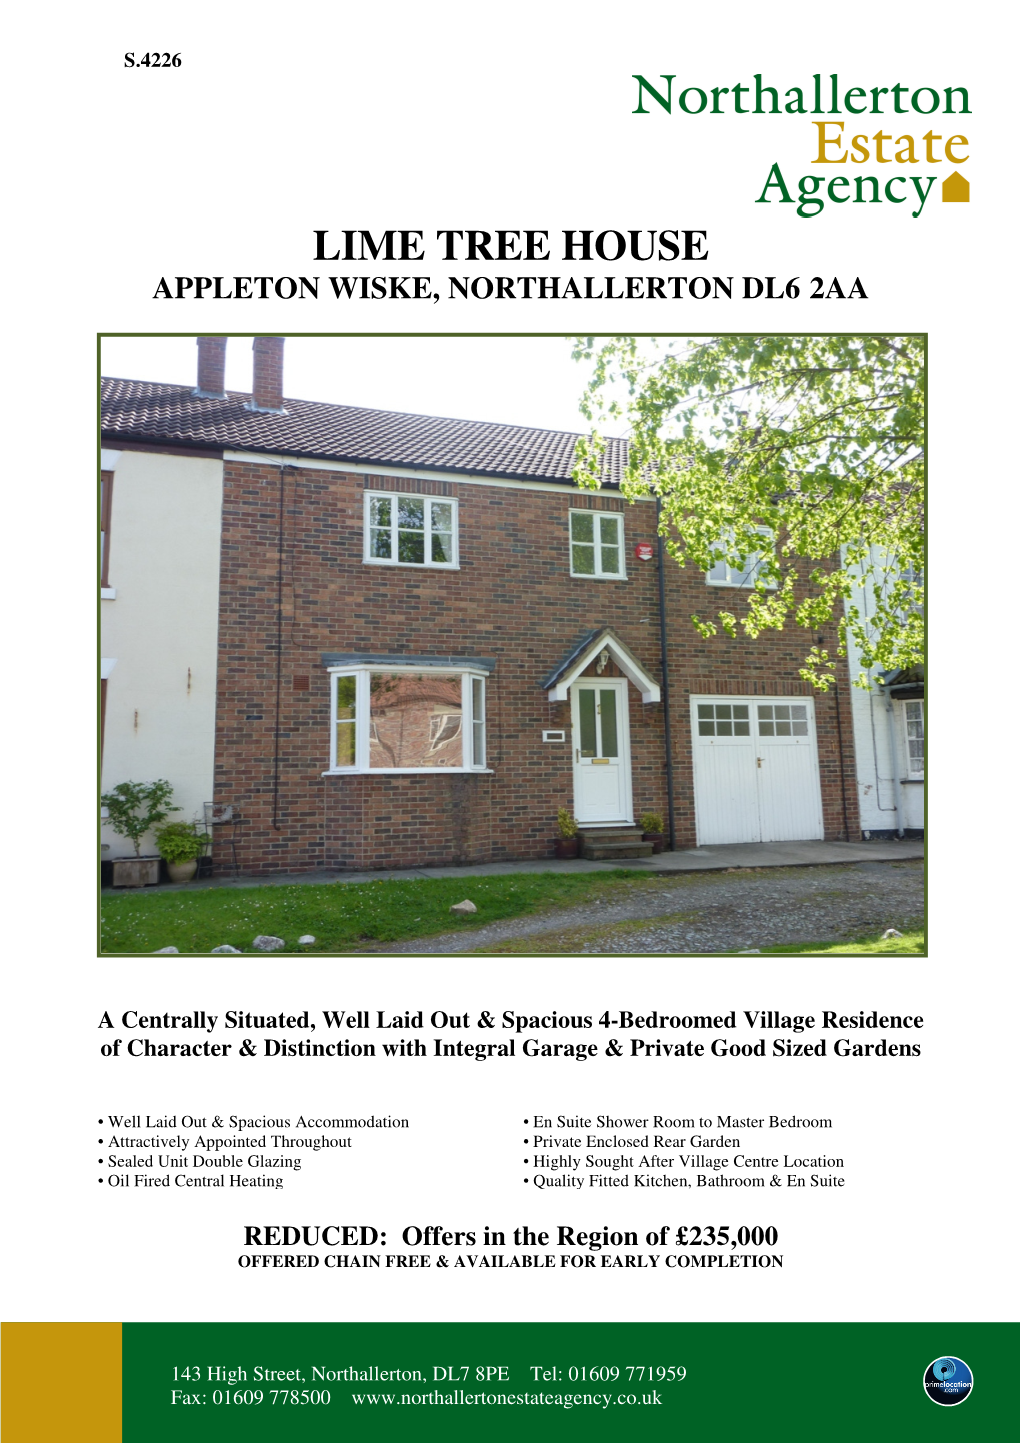 Lime Tree House